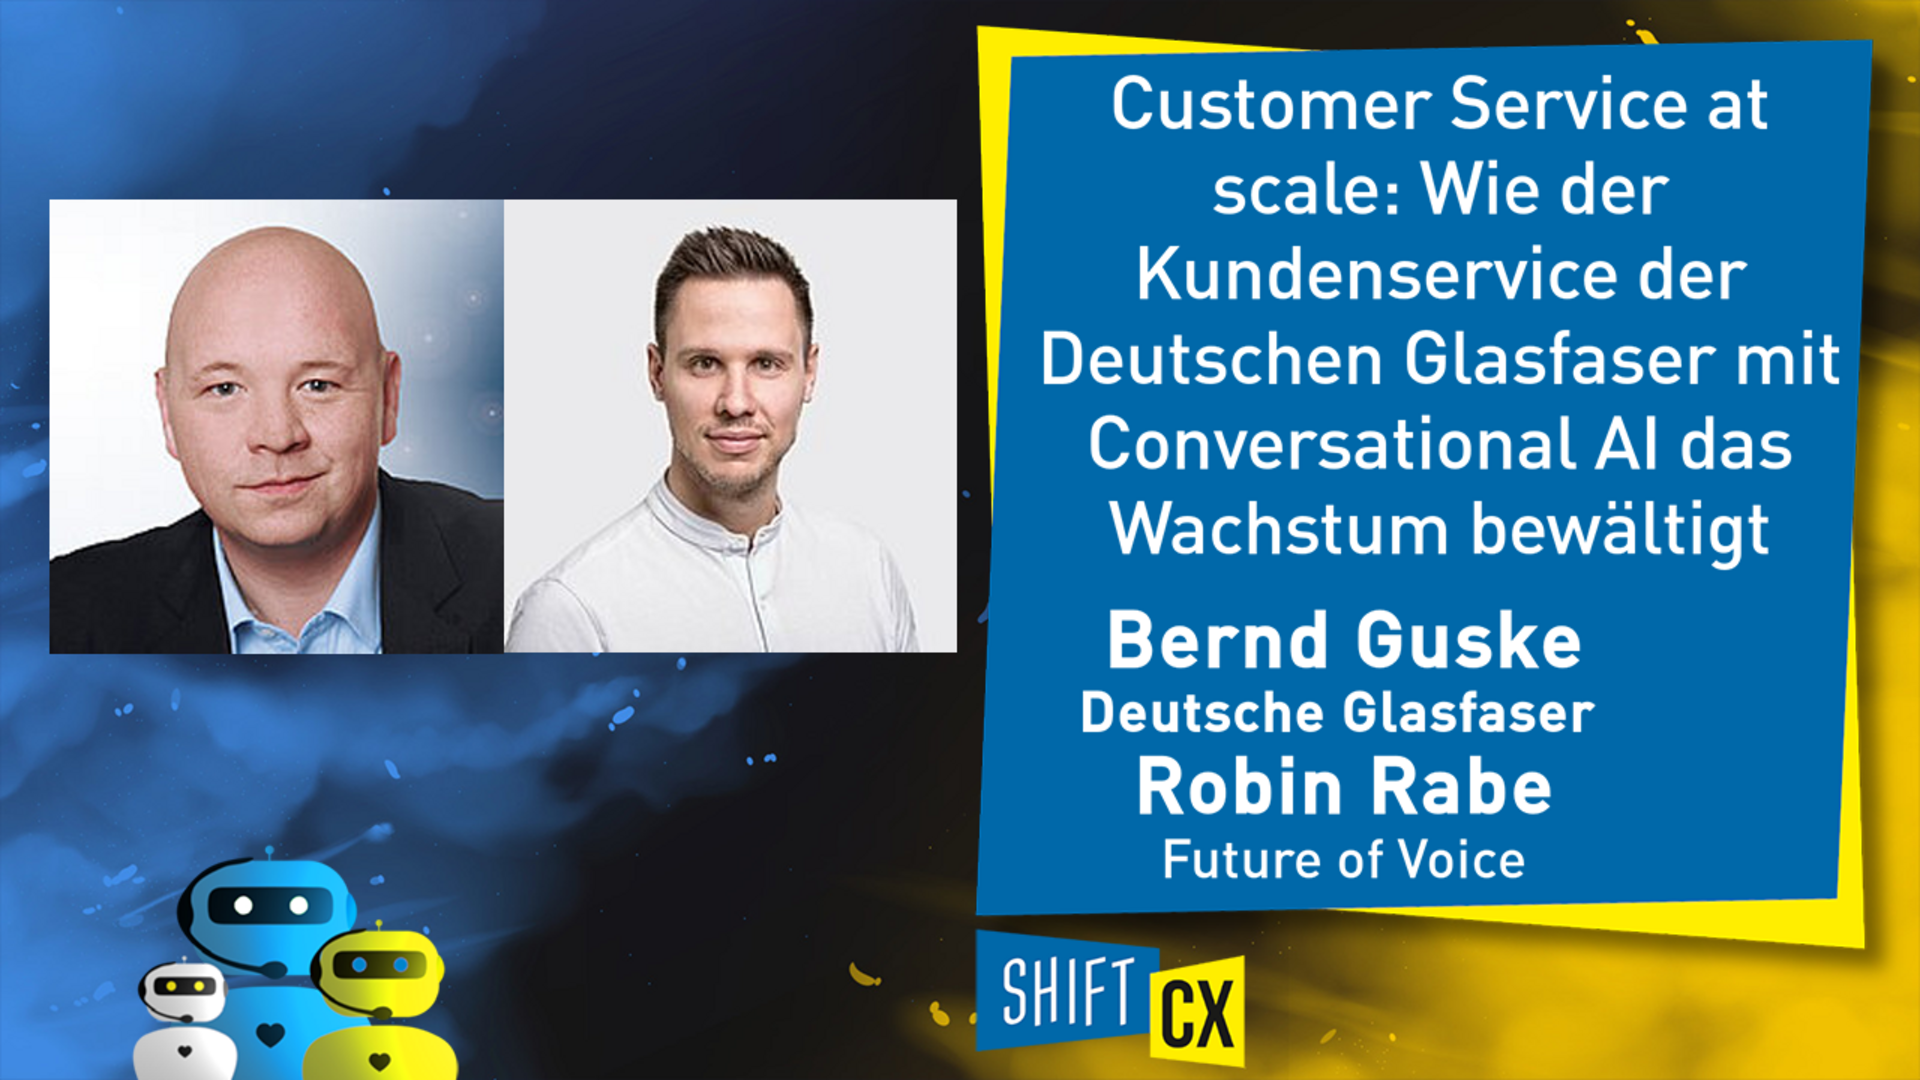 Customer Service at scale: Wie der Kundenservice der Deutschen Glasfaser mit Conversational AI das Wachstum bewältigt